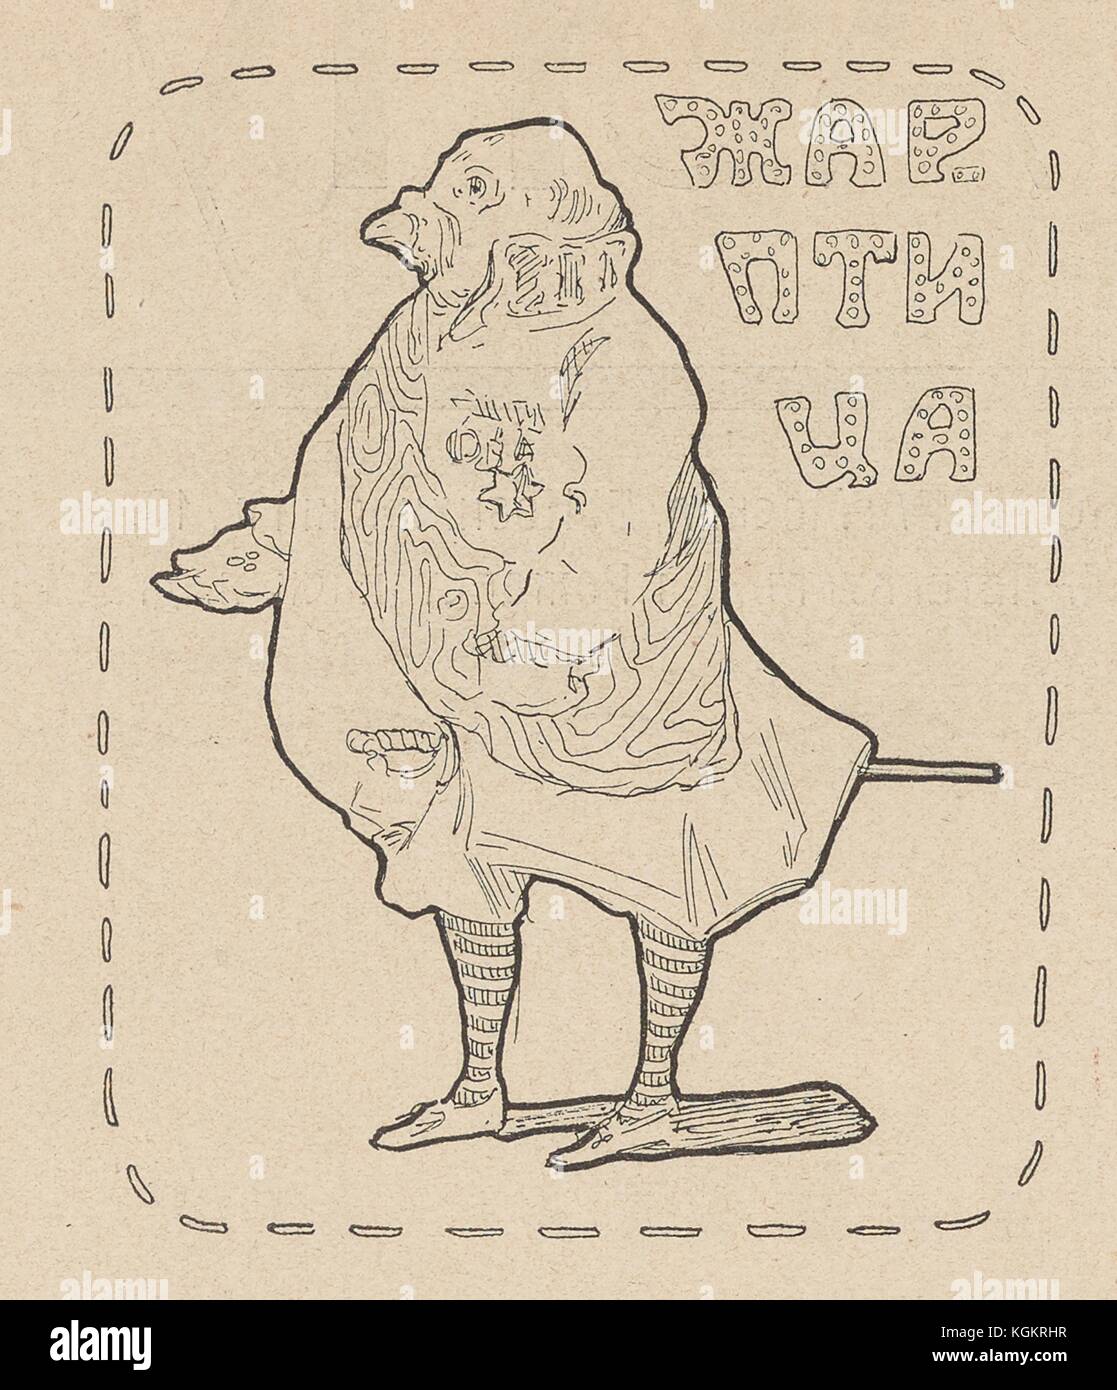 Abbildung: Aus der Russischen satirische Zeitschrift na rasputi (an der Kreuzung), Zar Nikolaus II. als Geflügel mit Text lesen, "Feuervogel", bezieht sich auf eine mythische glühende Vogel aus slawischer Folklore, 1906. () Stockfoto